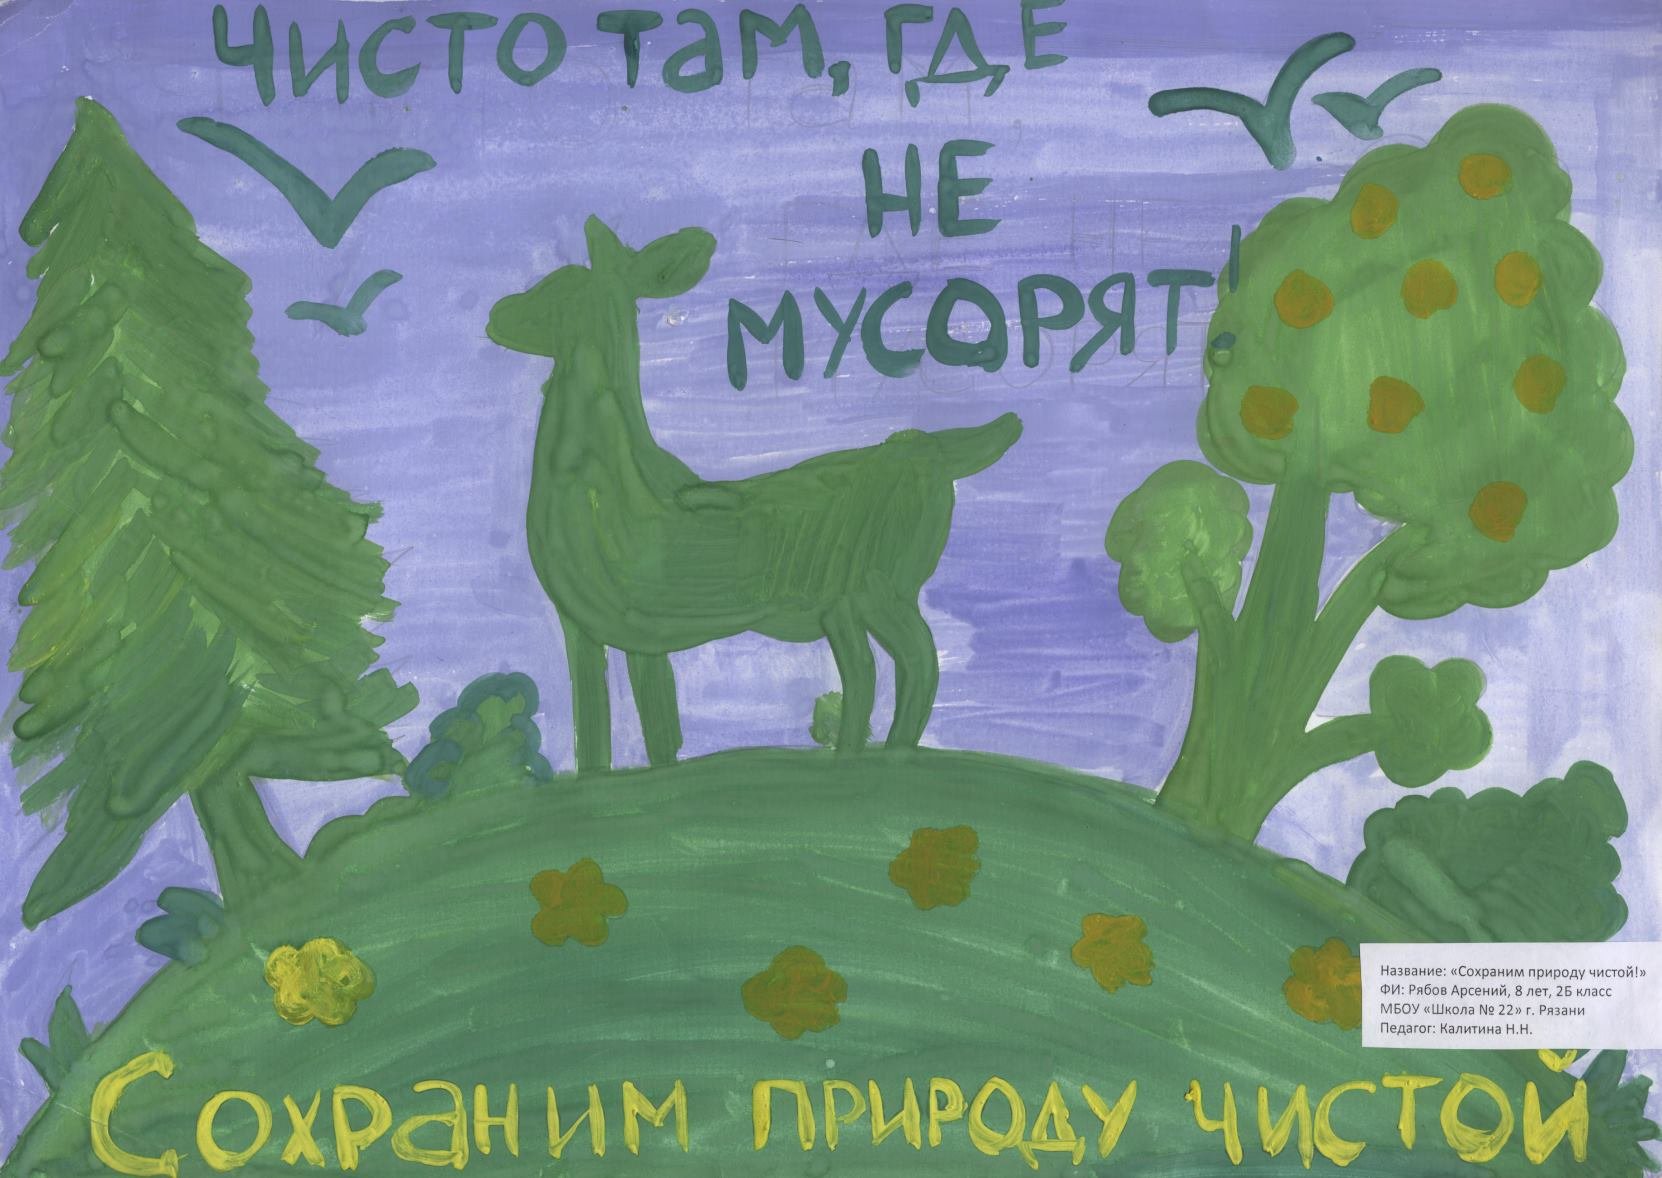 Сохраним природу татарстана. Плакат на экологическую тему. Плакат на тему защита природы. Сохрани природу плакат. Рисунок по защите природы.